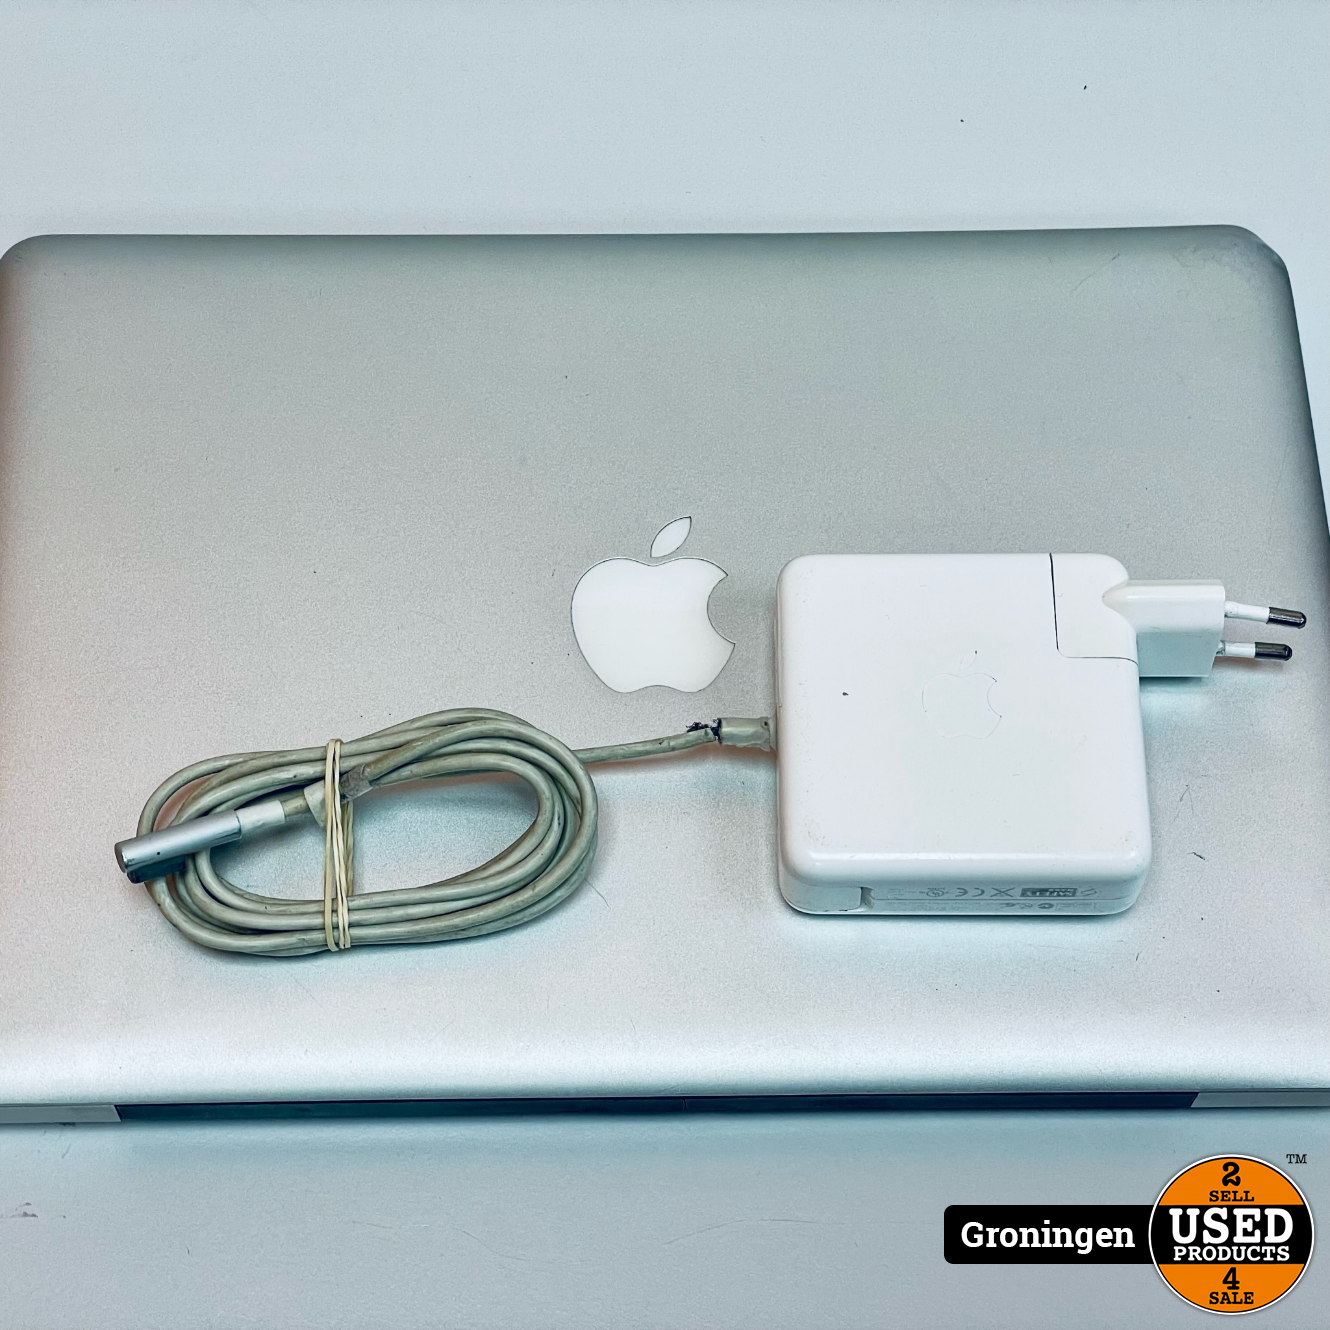 buy macbook pro power cord